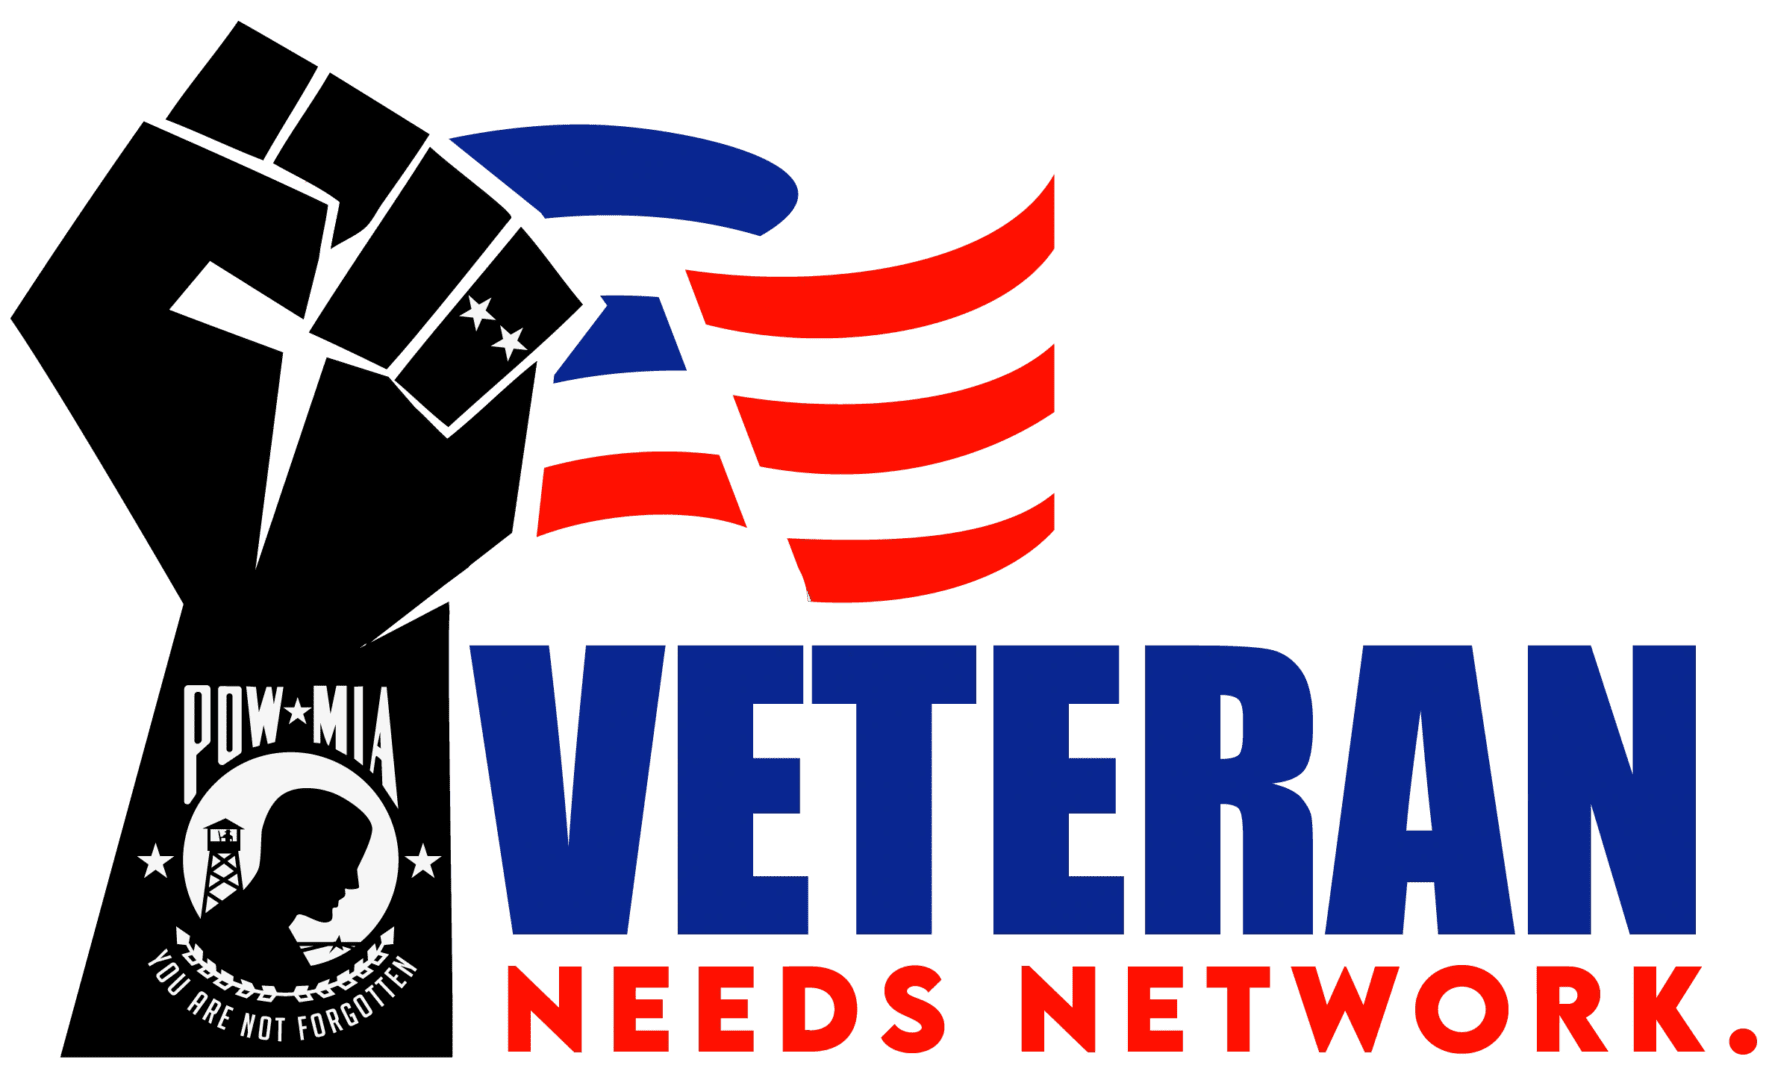 Veteran Needs Network